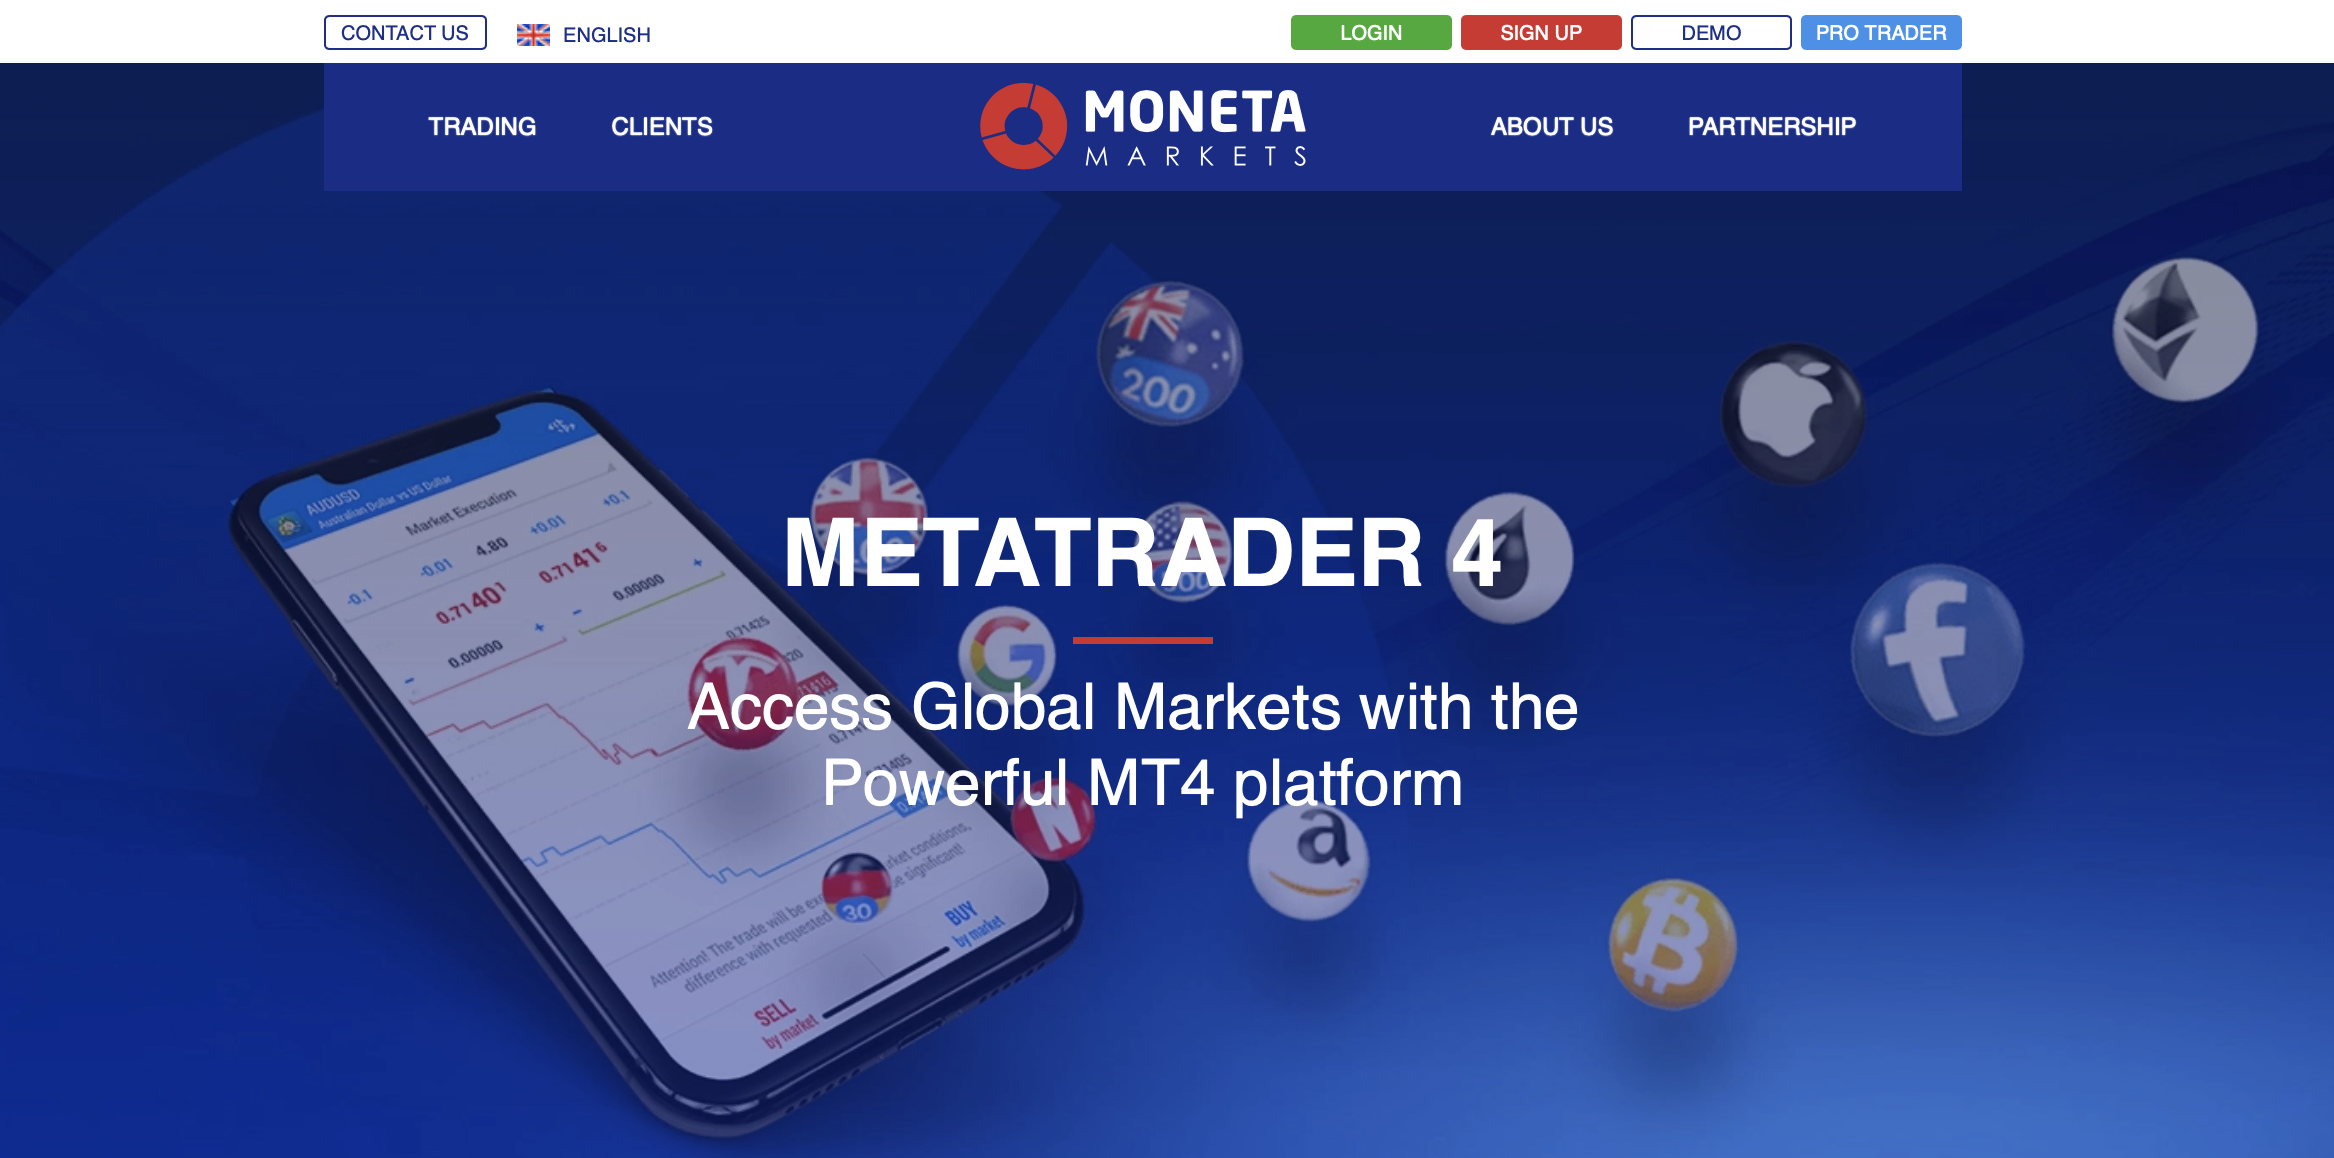 Moneta Markets'nin resmi MetaTrader 4 açılış sayfası